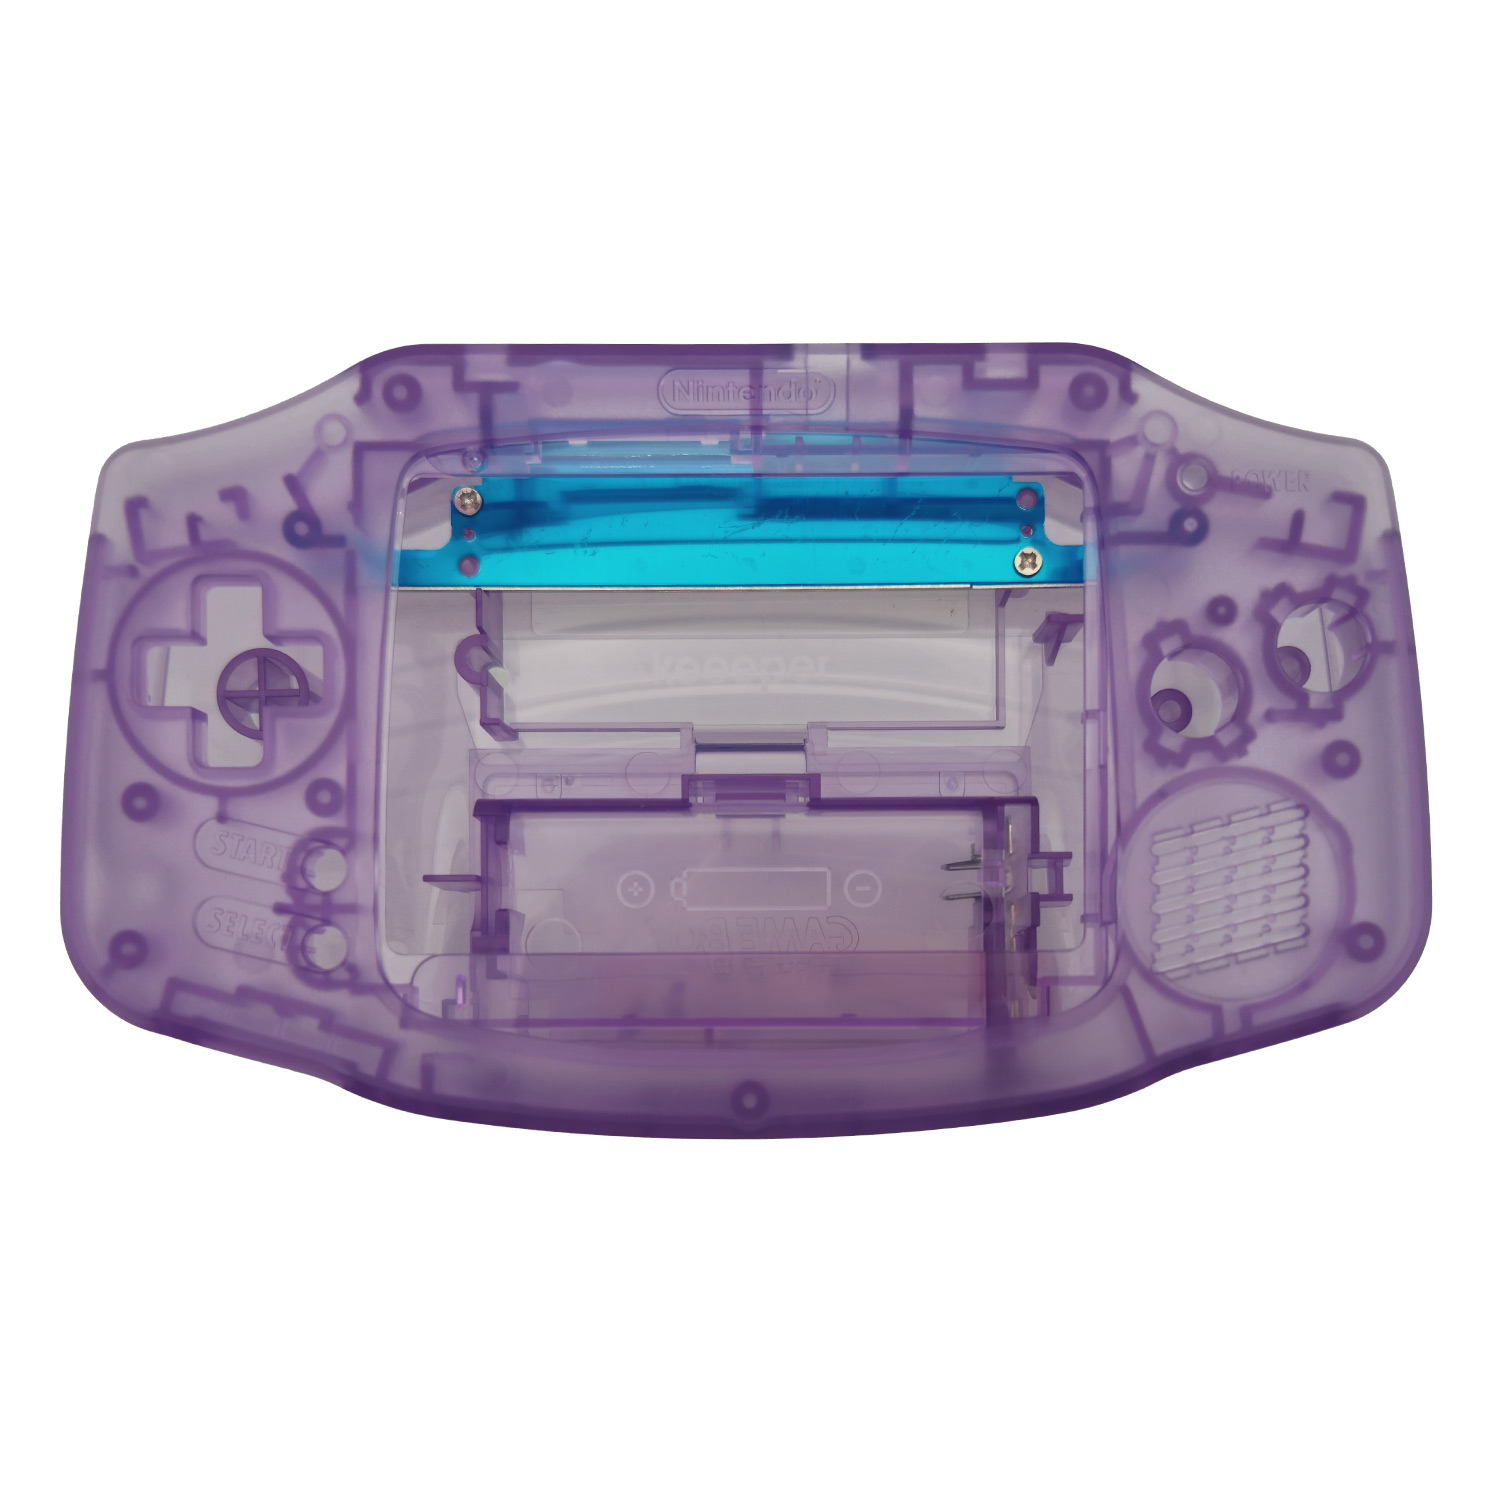 Game Boy Advance Shell (Atomic Purple) - SALE